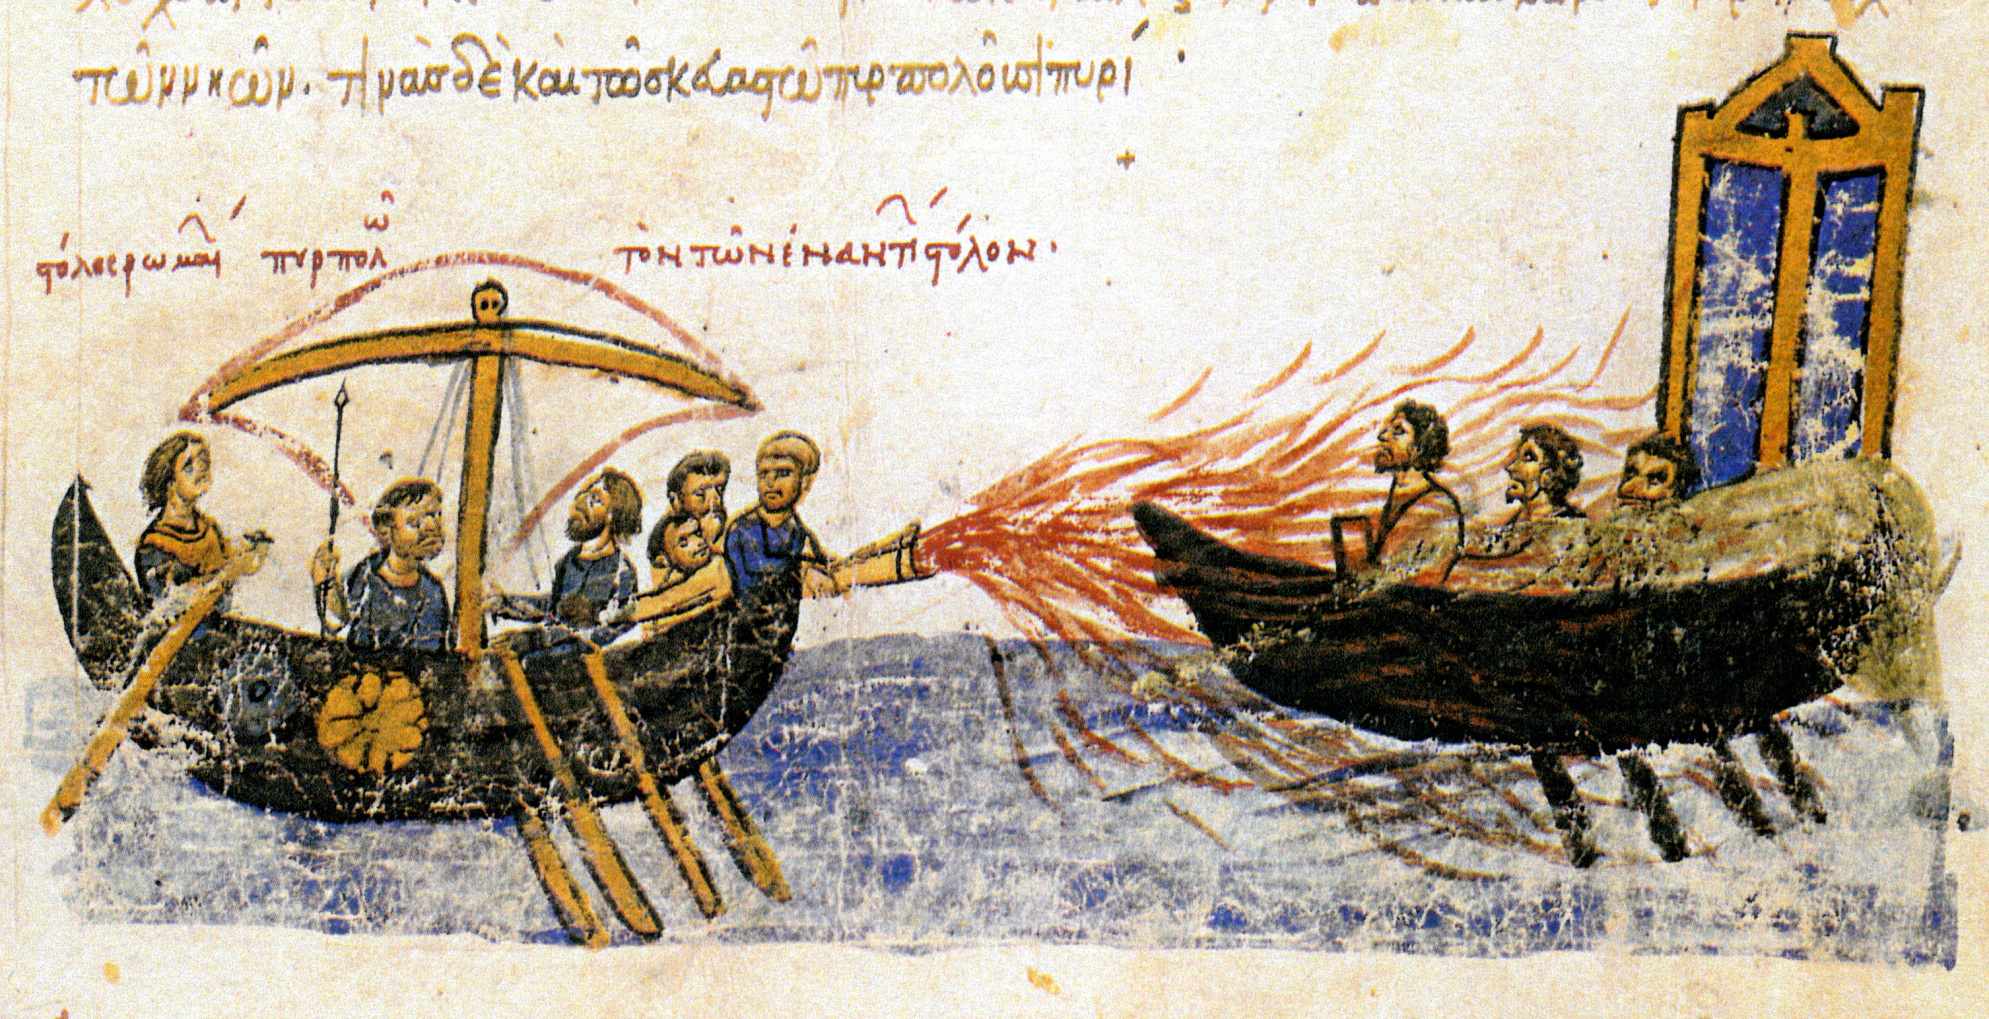 “罗马舰队烧毁了对面的舰队”——一艘拜占庭船用希腊火攻击一艘属于叛军斯拉夫托马斯的船，821。12 世纪马德里 Skylitzes 的插图。